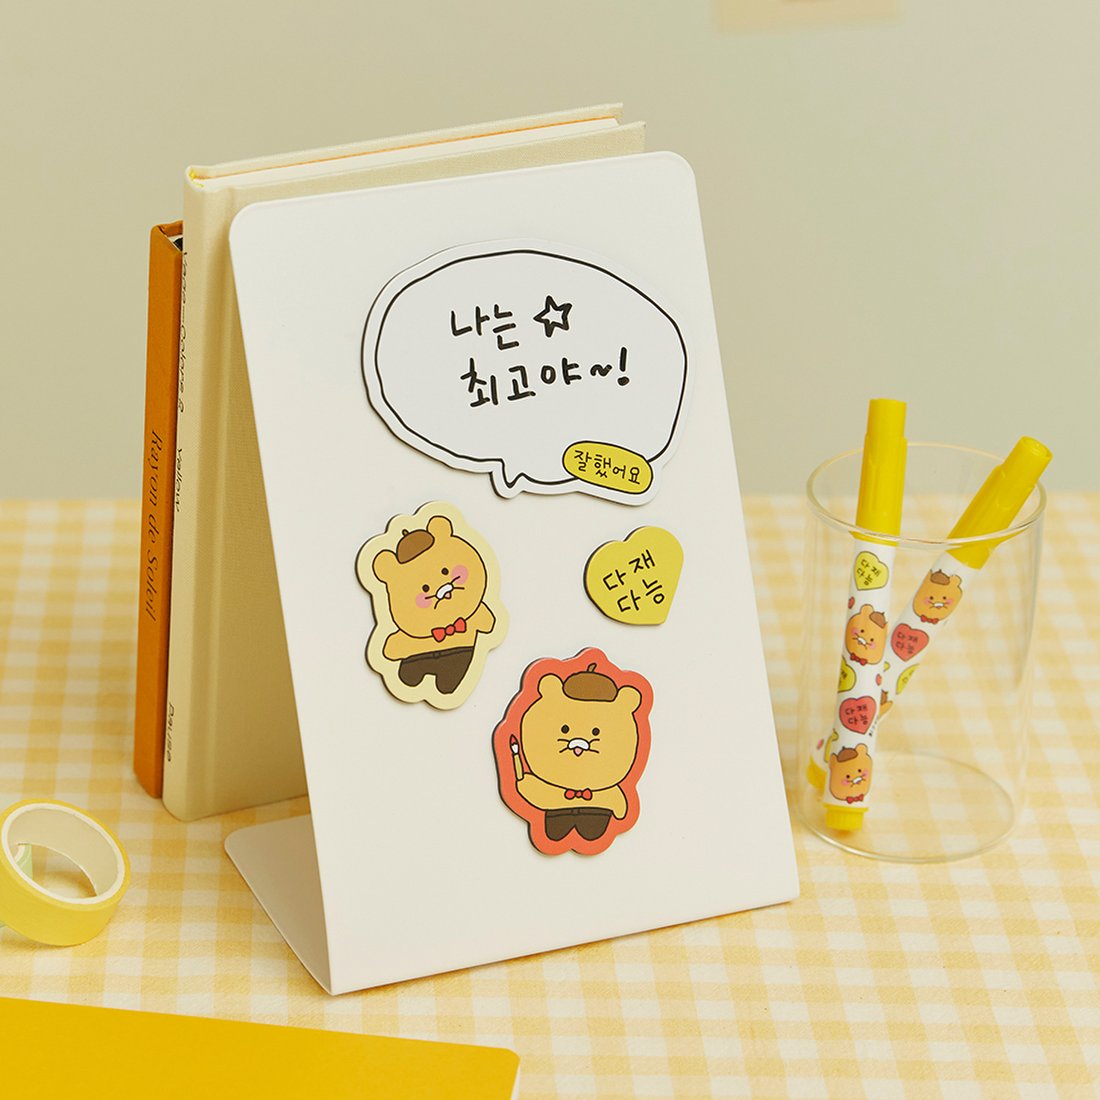 韓國🇰🇷 正版 KaKao Friends CHOONSIK 冰箱貼套裝 冰箱裝飾  磁性貼 附筆